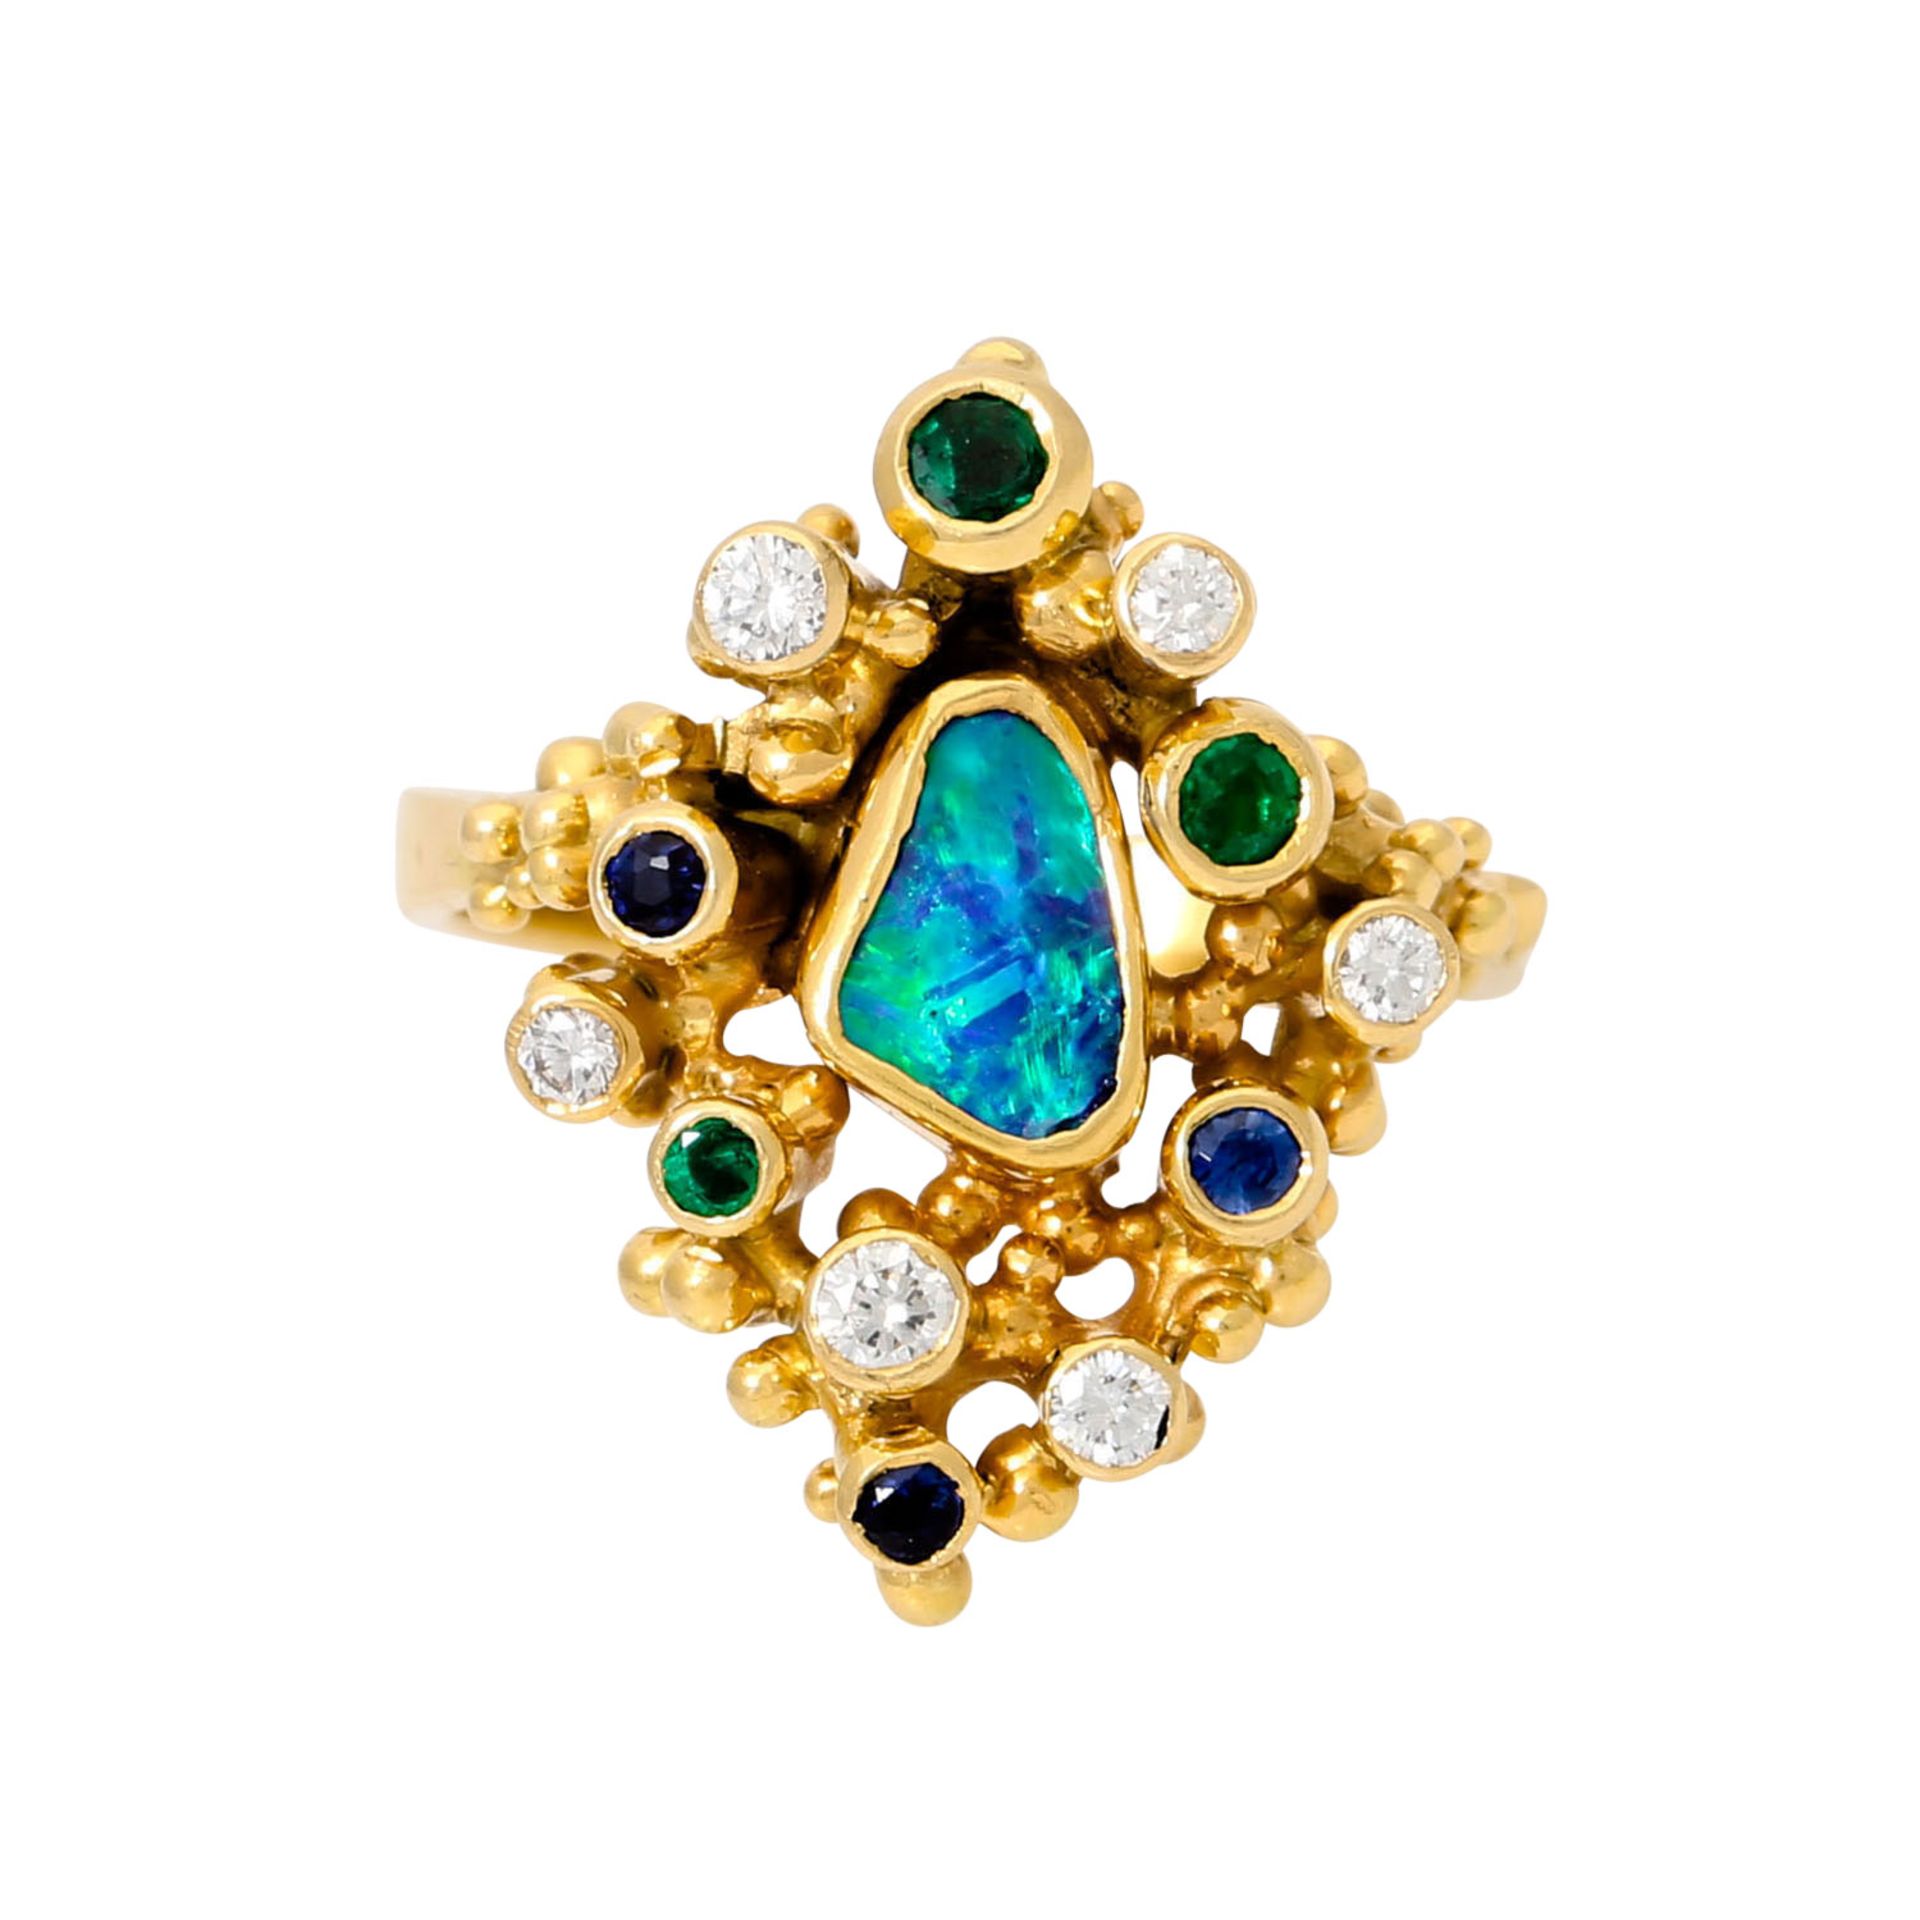 EHINGER SCHWARZ Ring mit Opal, 6 Brillanten von zus. ca. 0,21 ct, - Image 2 of 3